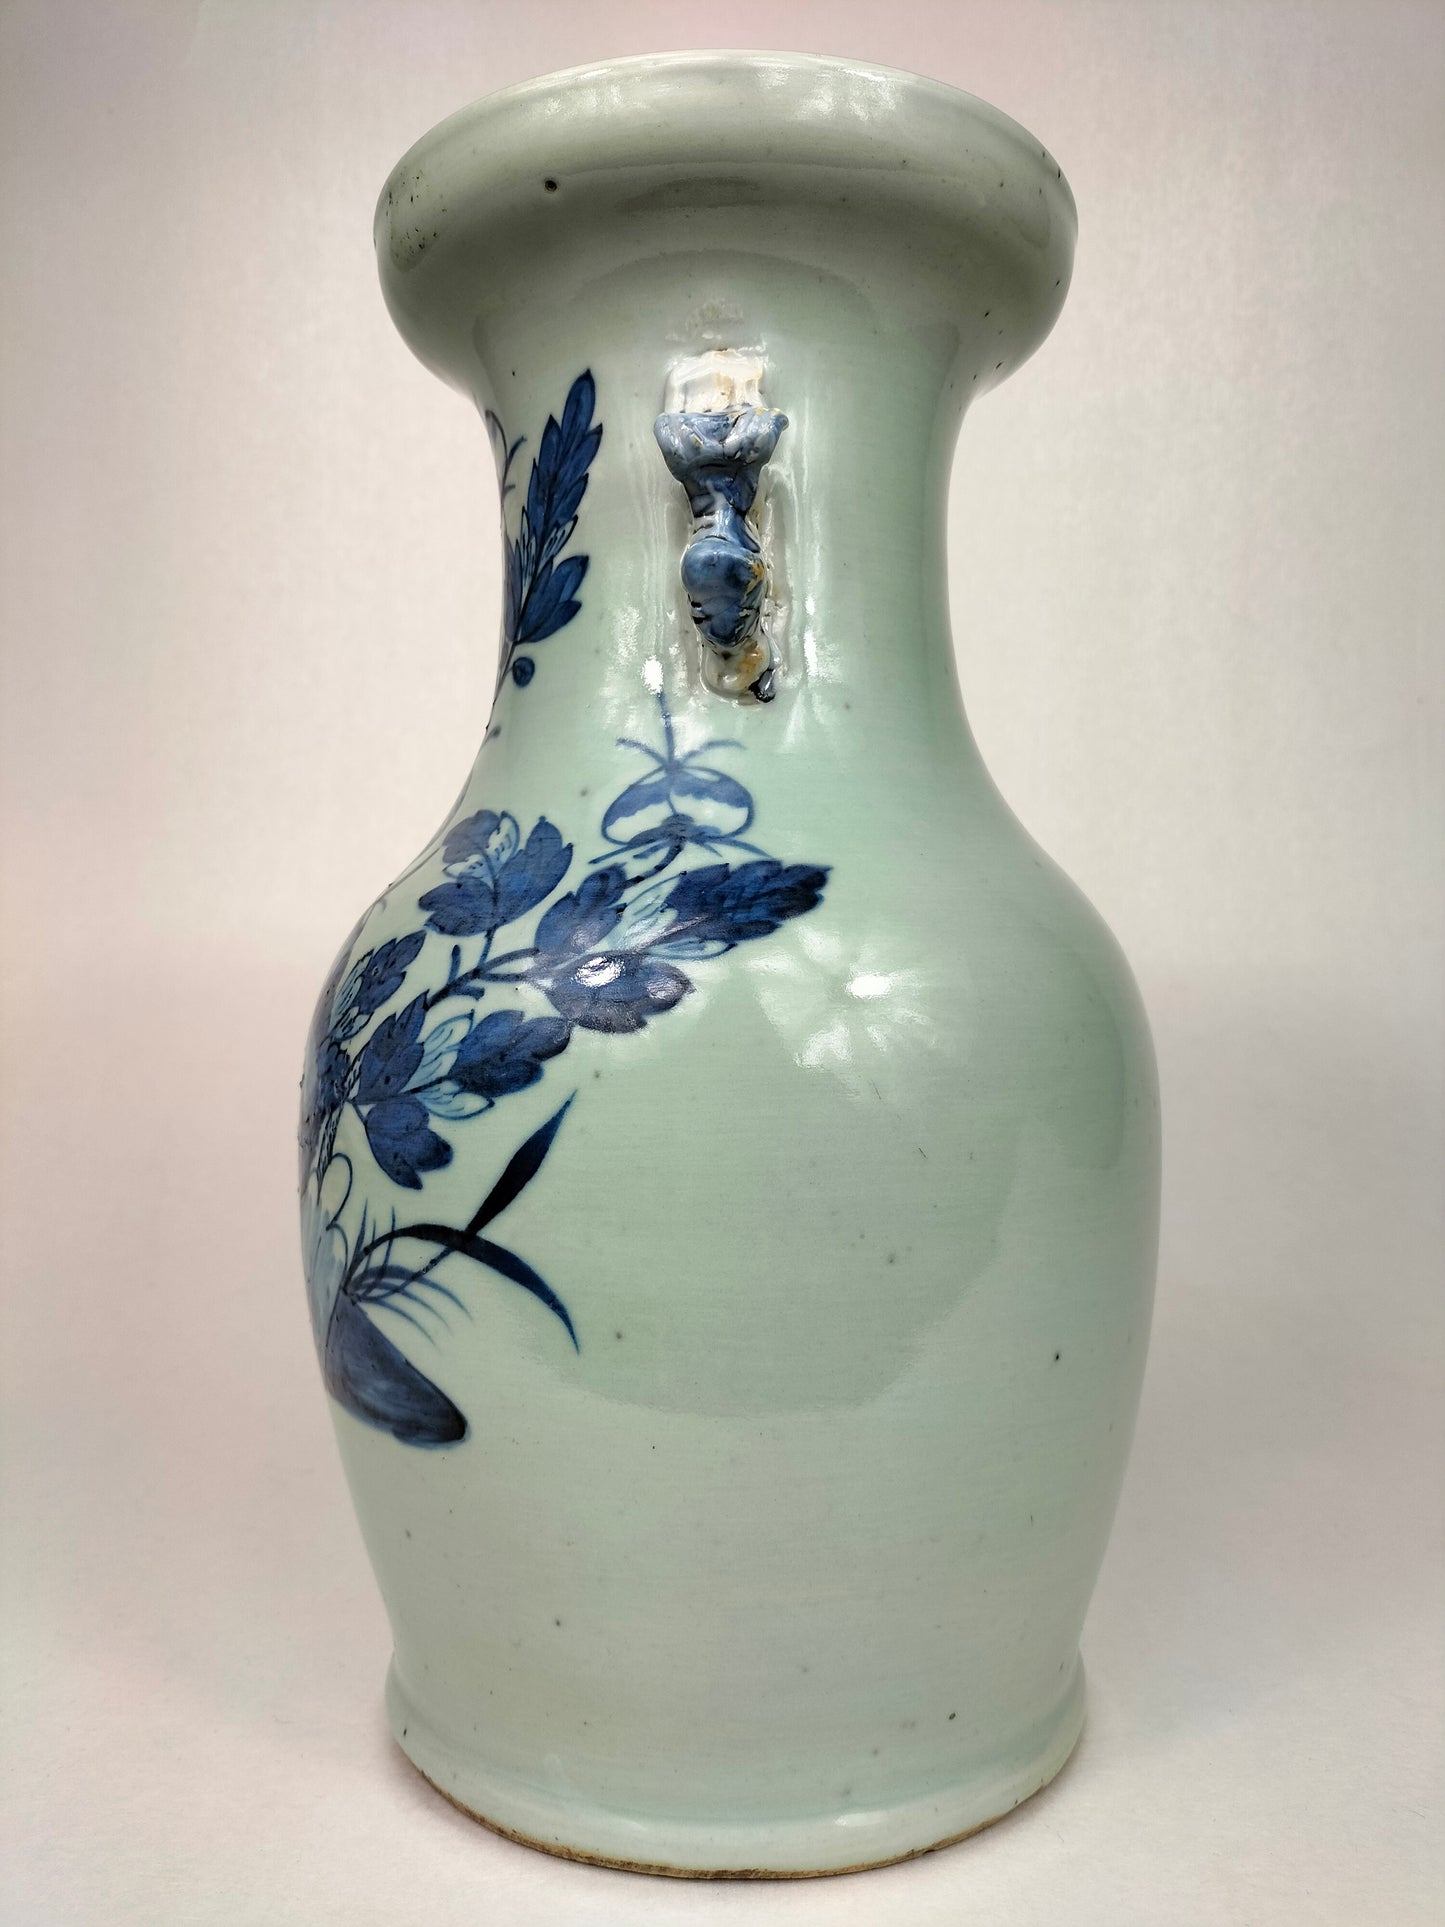 Antigo vaso chinês de celadon decorado com pássaros e flores // Dinastia Qing - século XIX